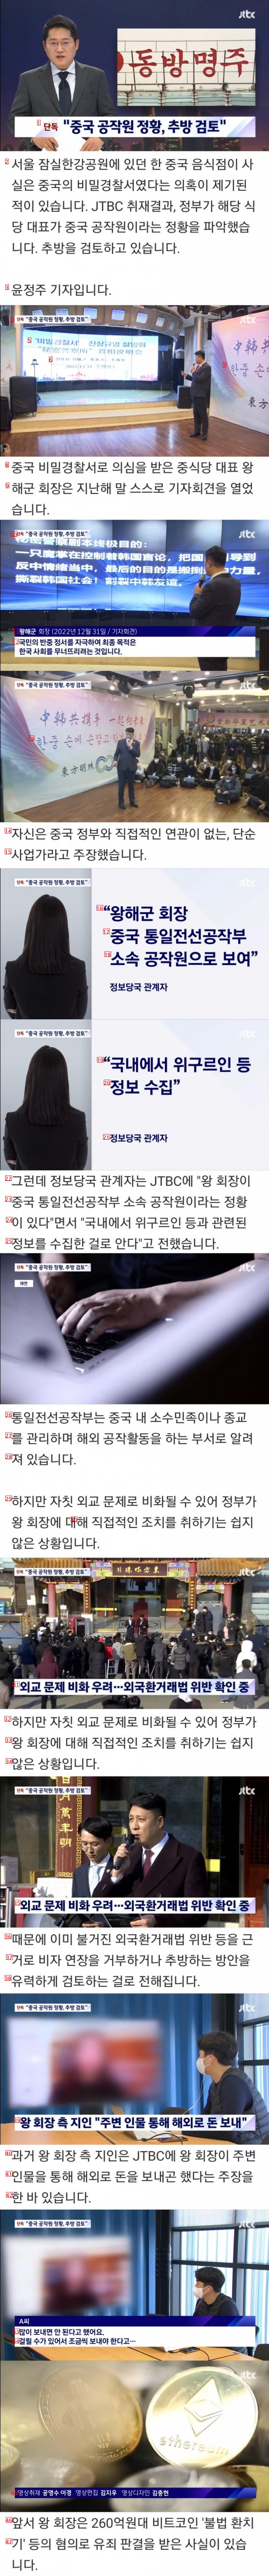 (단독)비밀경찰 의혹, 중국 공작원 정황 발견.news